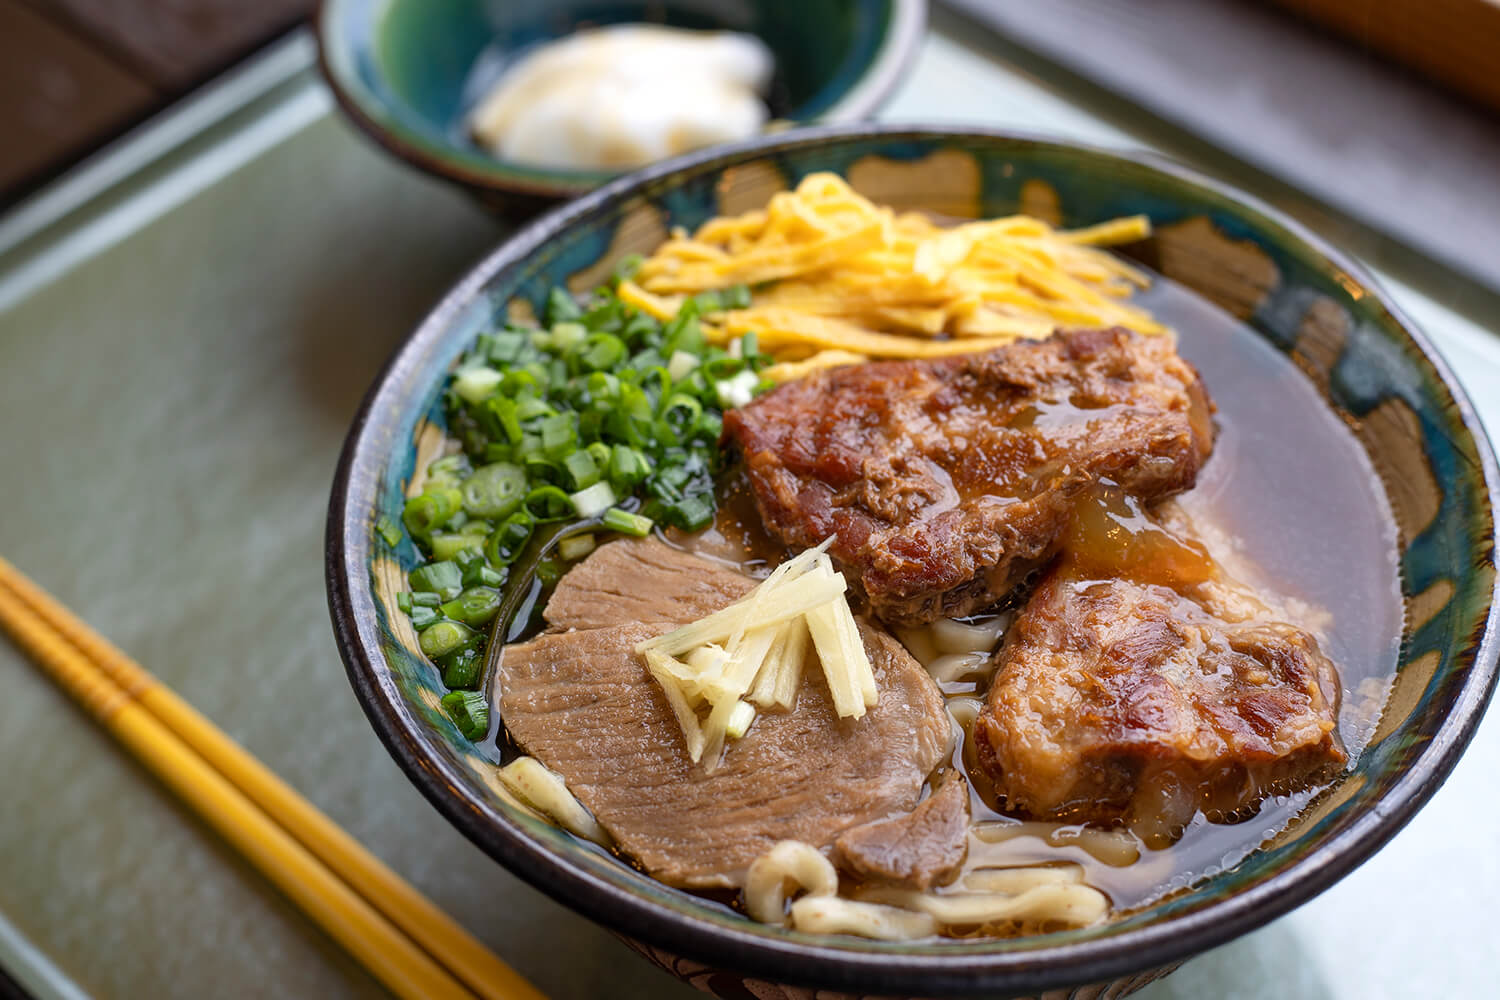 「帆掛きそば（並）」900円（オリジナル生麺を選んだ場合）。自家製のジーマーミ豆腐もつく